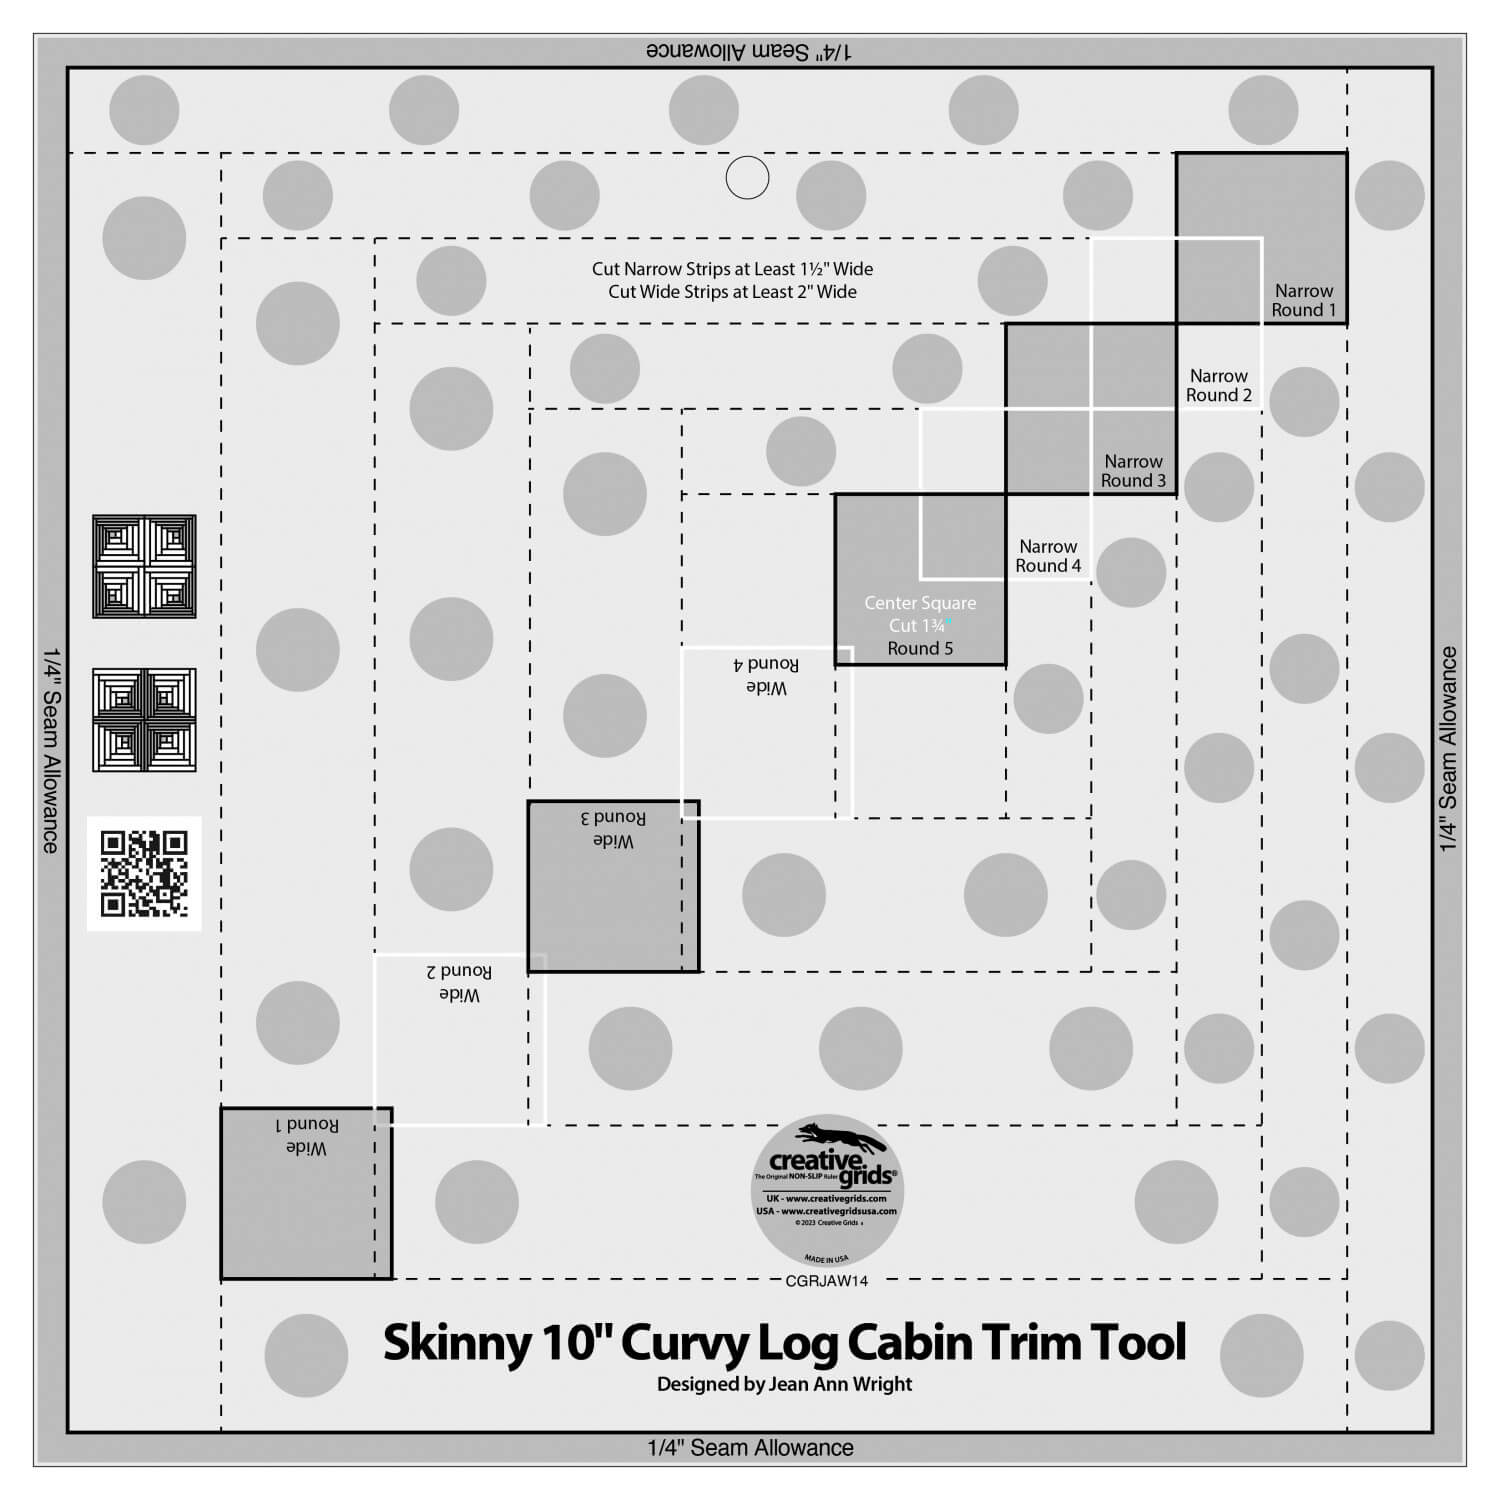 10 inch Skinny Curvy Log Cabin Trim Tool